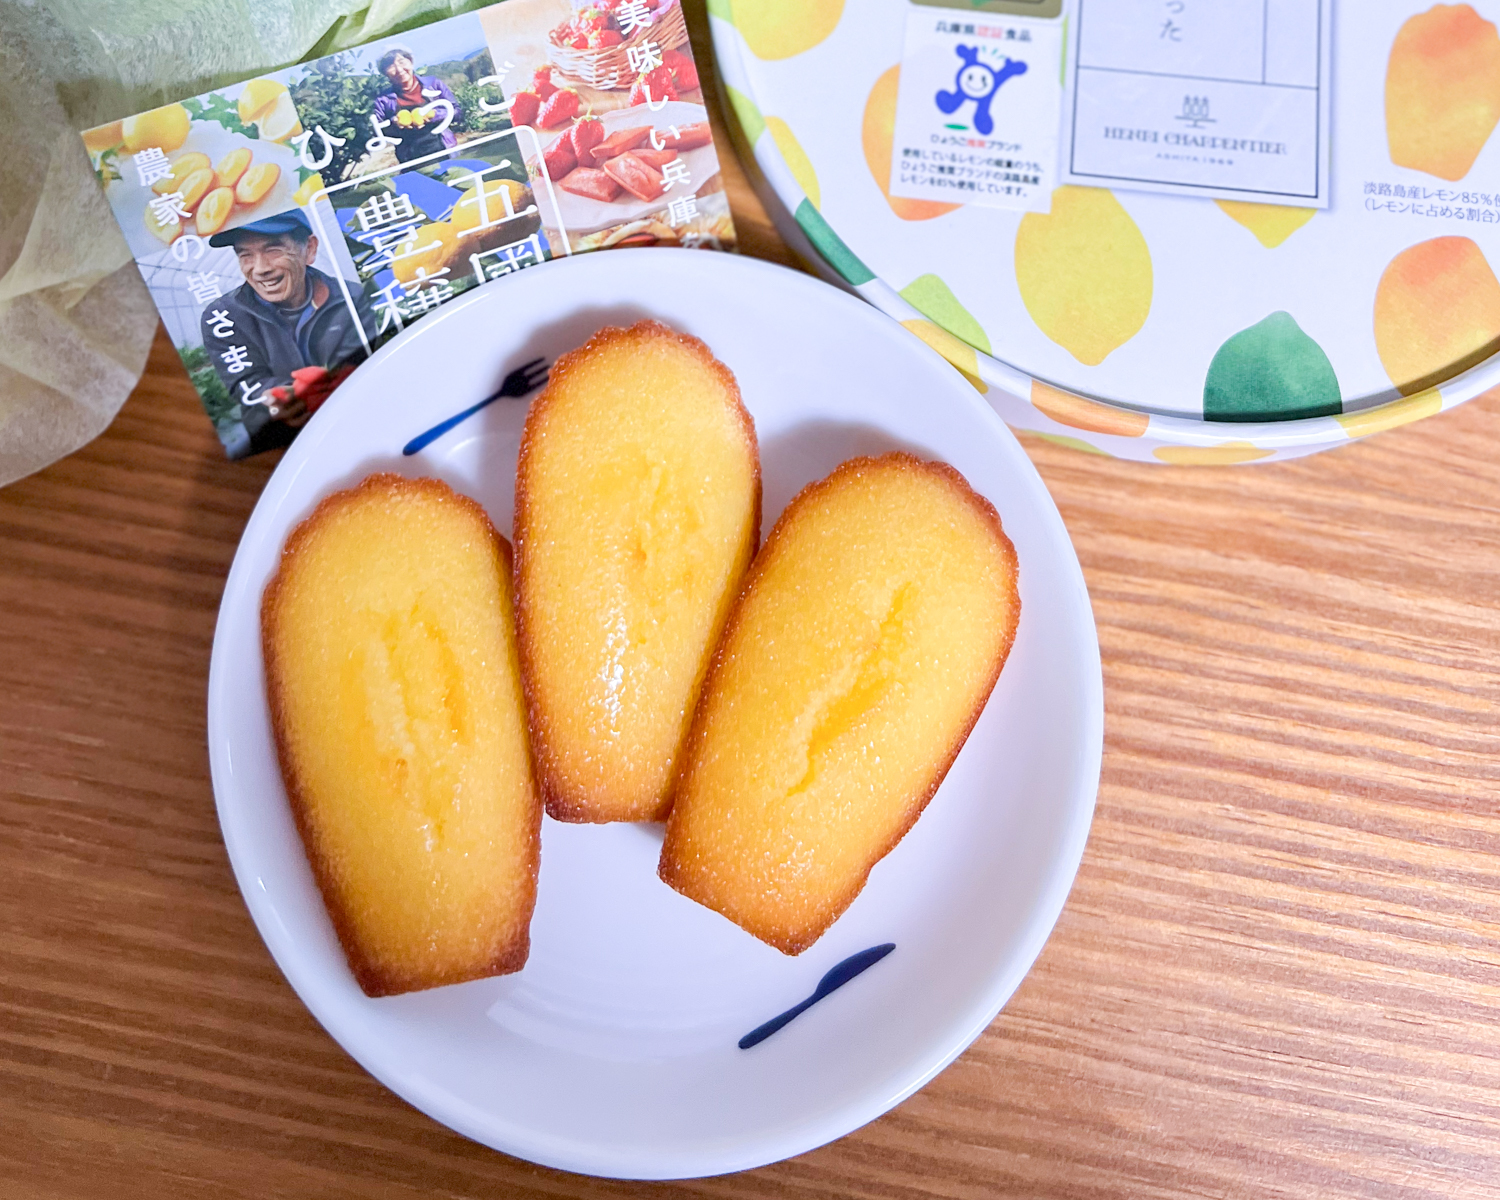 ひょうご五國豊穣　淡路島産レモンを使ったマドレーヌ 兵庫県 |アンリ・シャルパンティエ